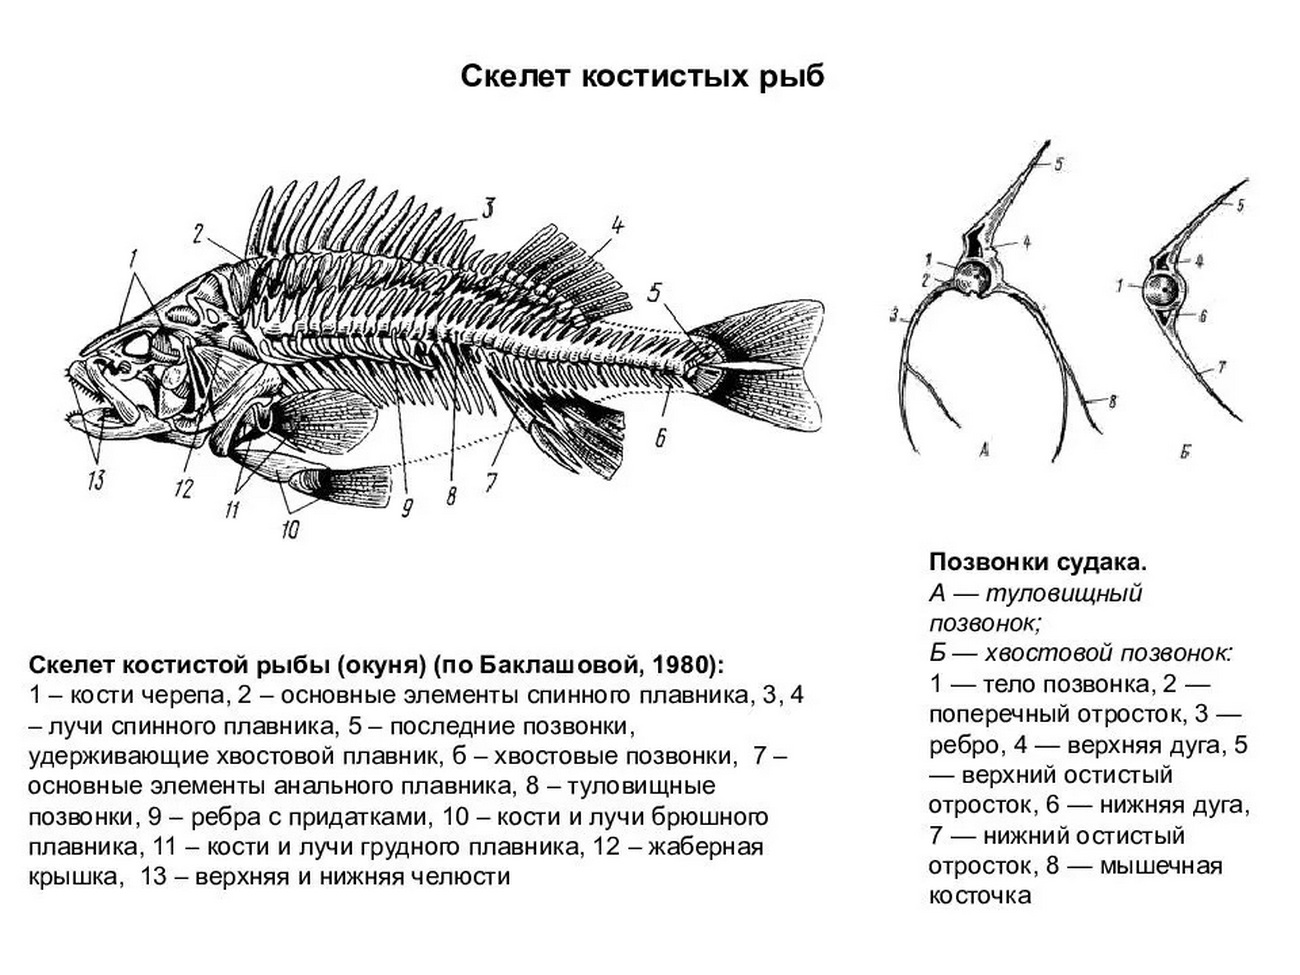 Осевой скелет костных рыб